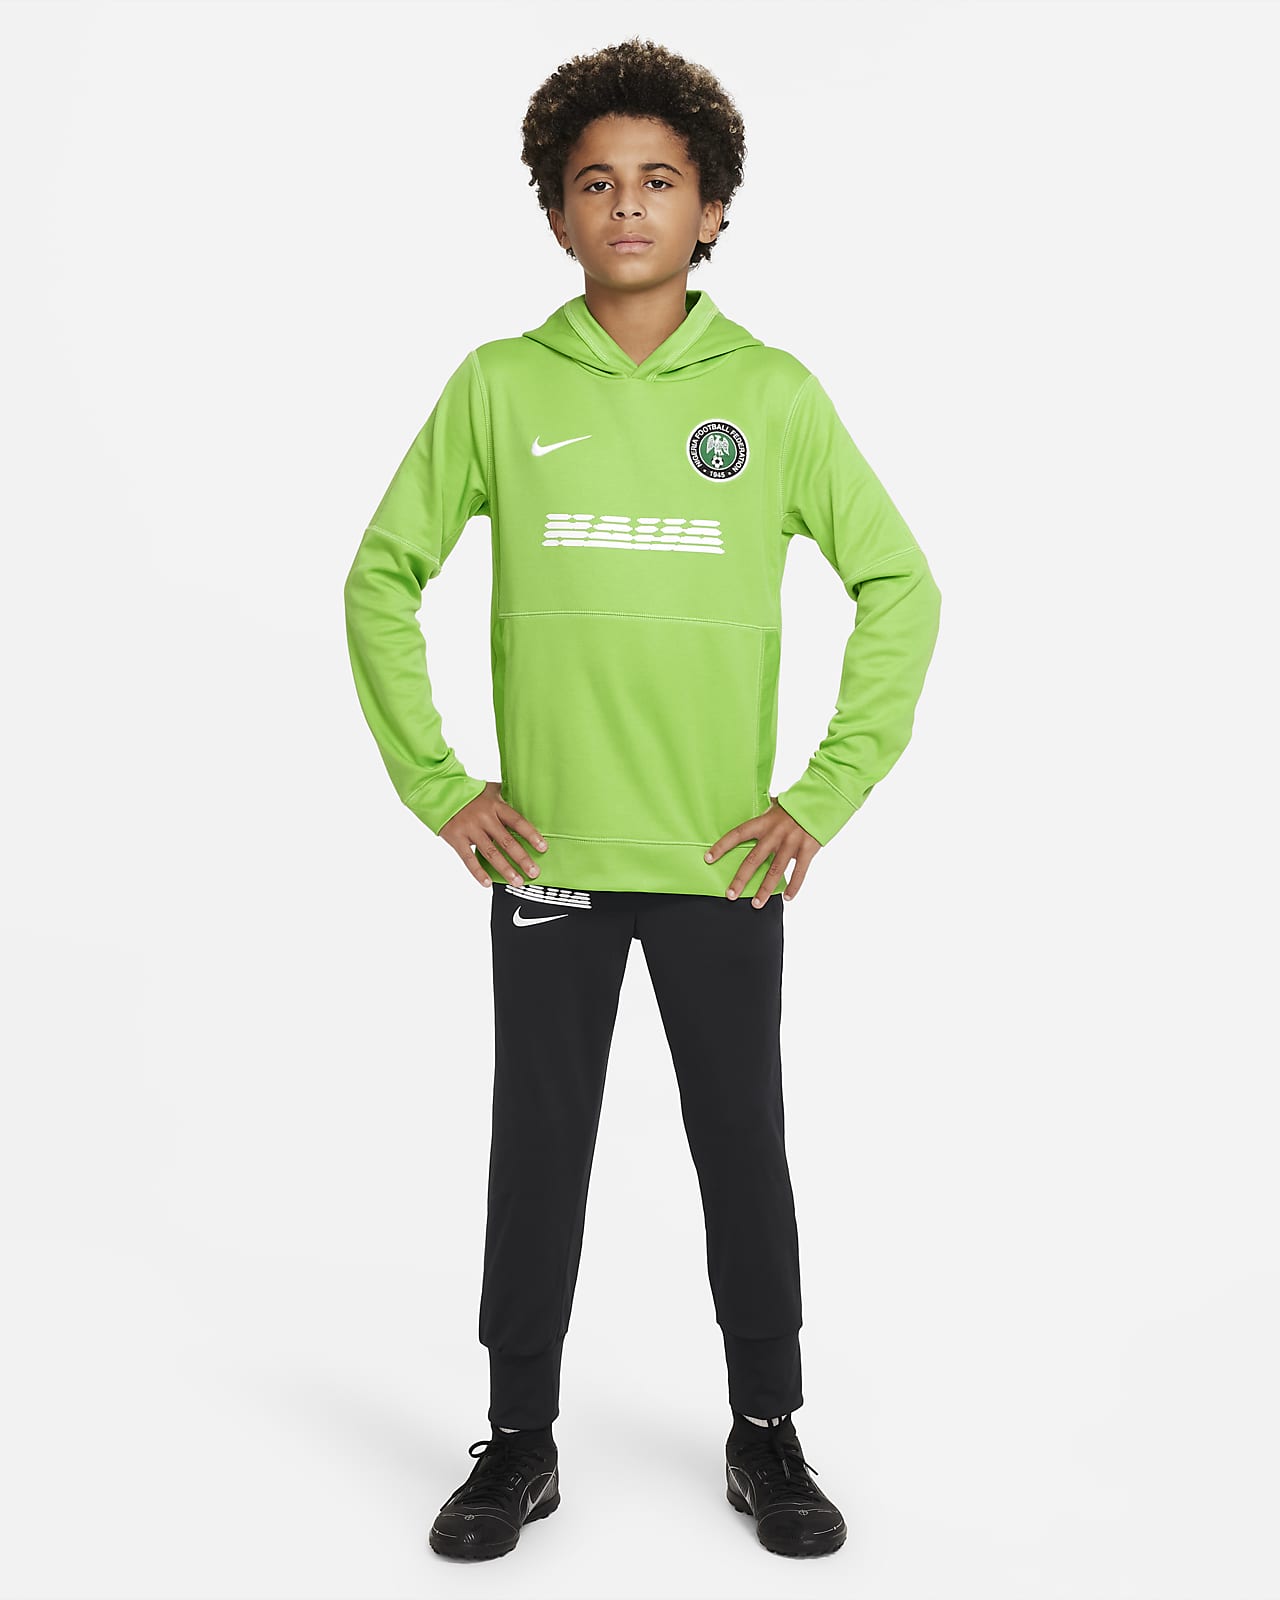 åbenbaring udsende gyldige Nigeria Nike-pullover-fodboldhættetrøje til større børn. Nike DK